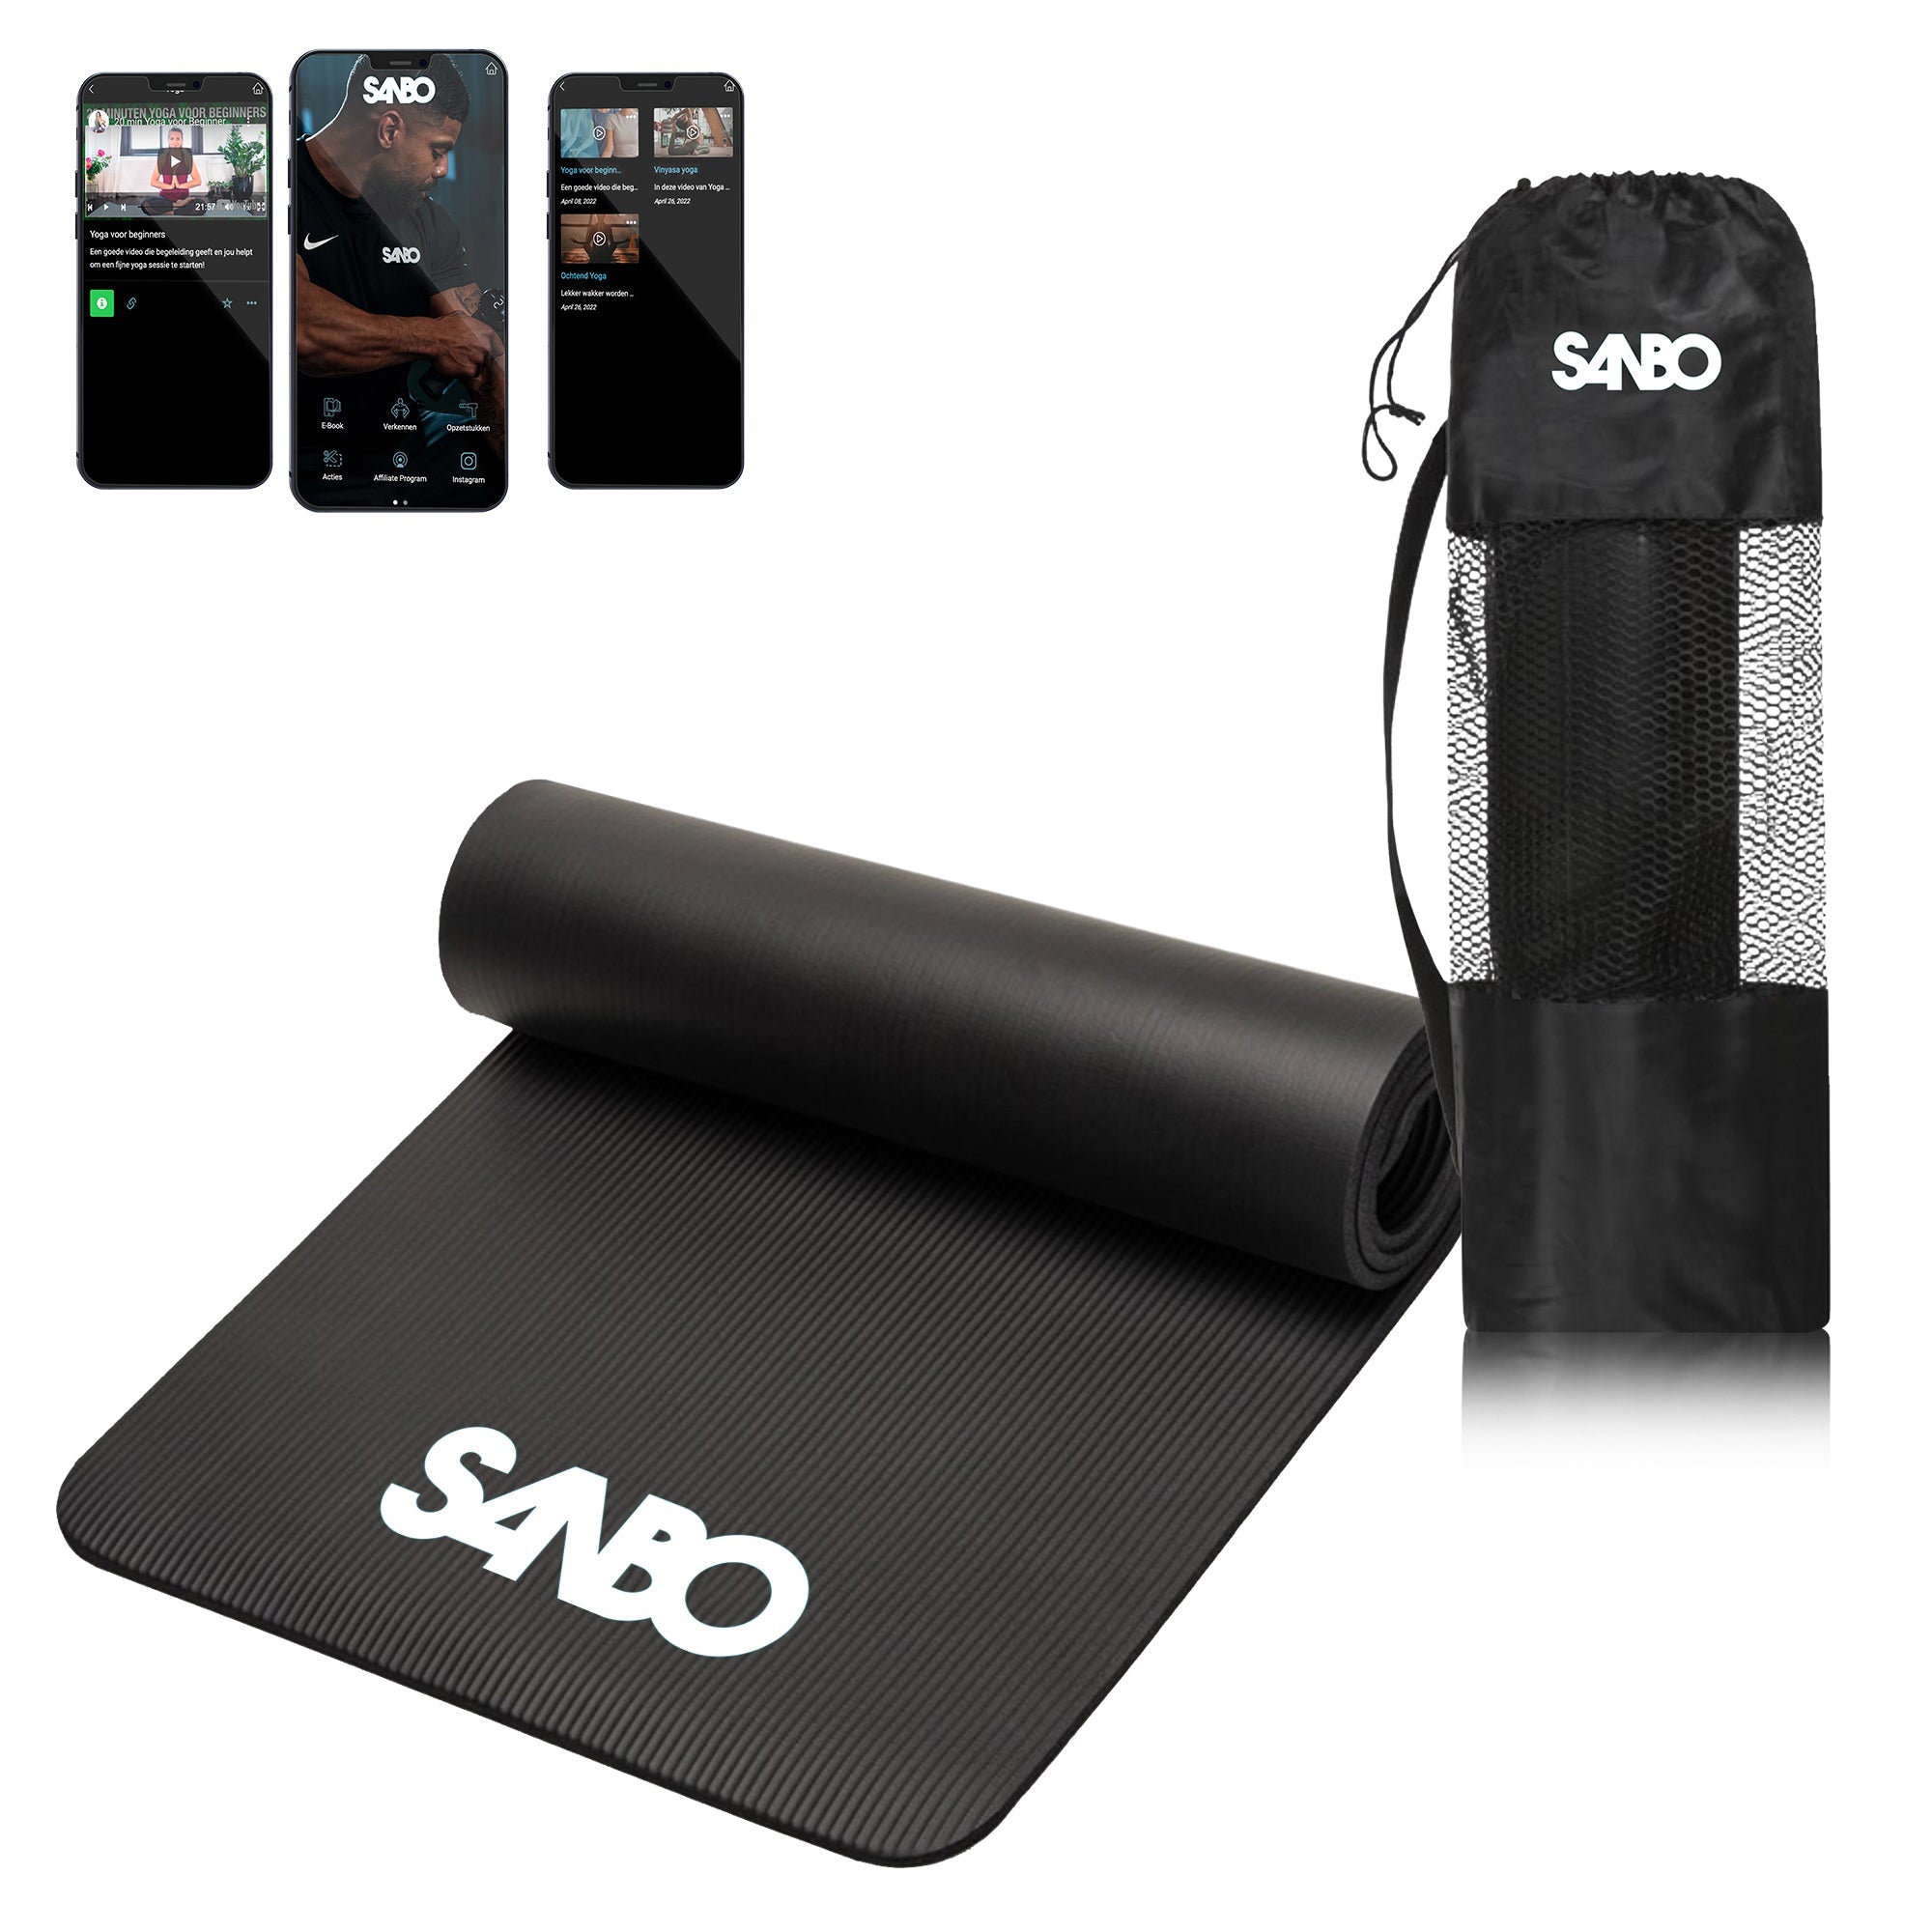 Impasse Amfibisch Vooruitzien Sanbo Yoga Mat - Incl. Luxe Draagtas - Incl. App Met Uitleg - 183 x 61